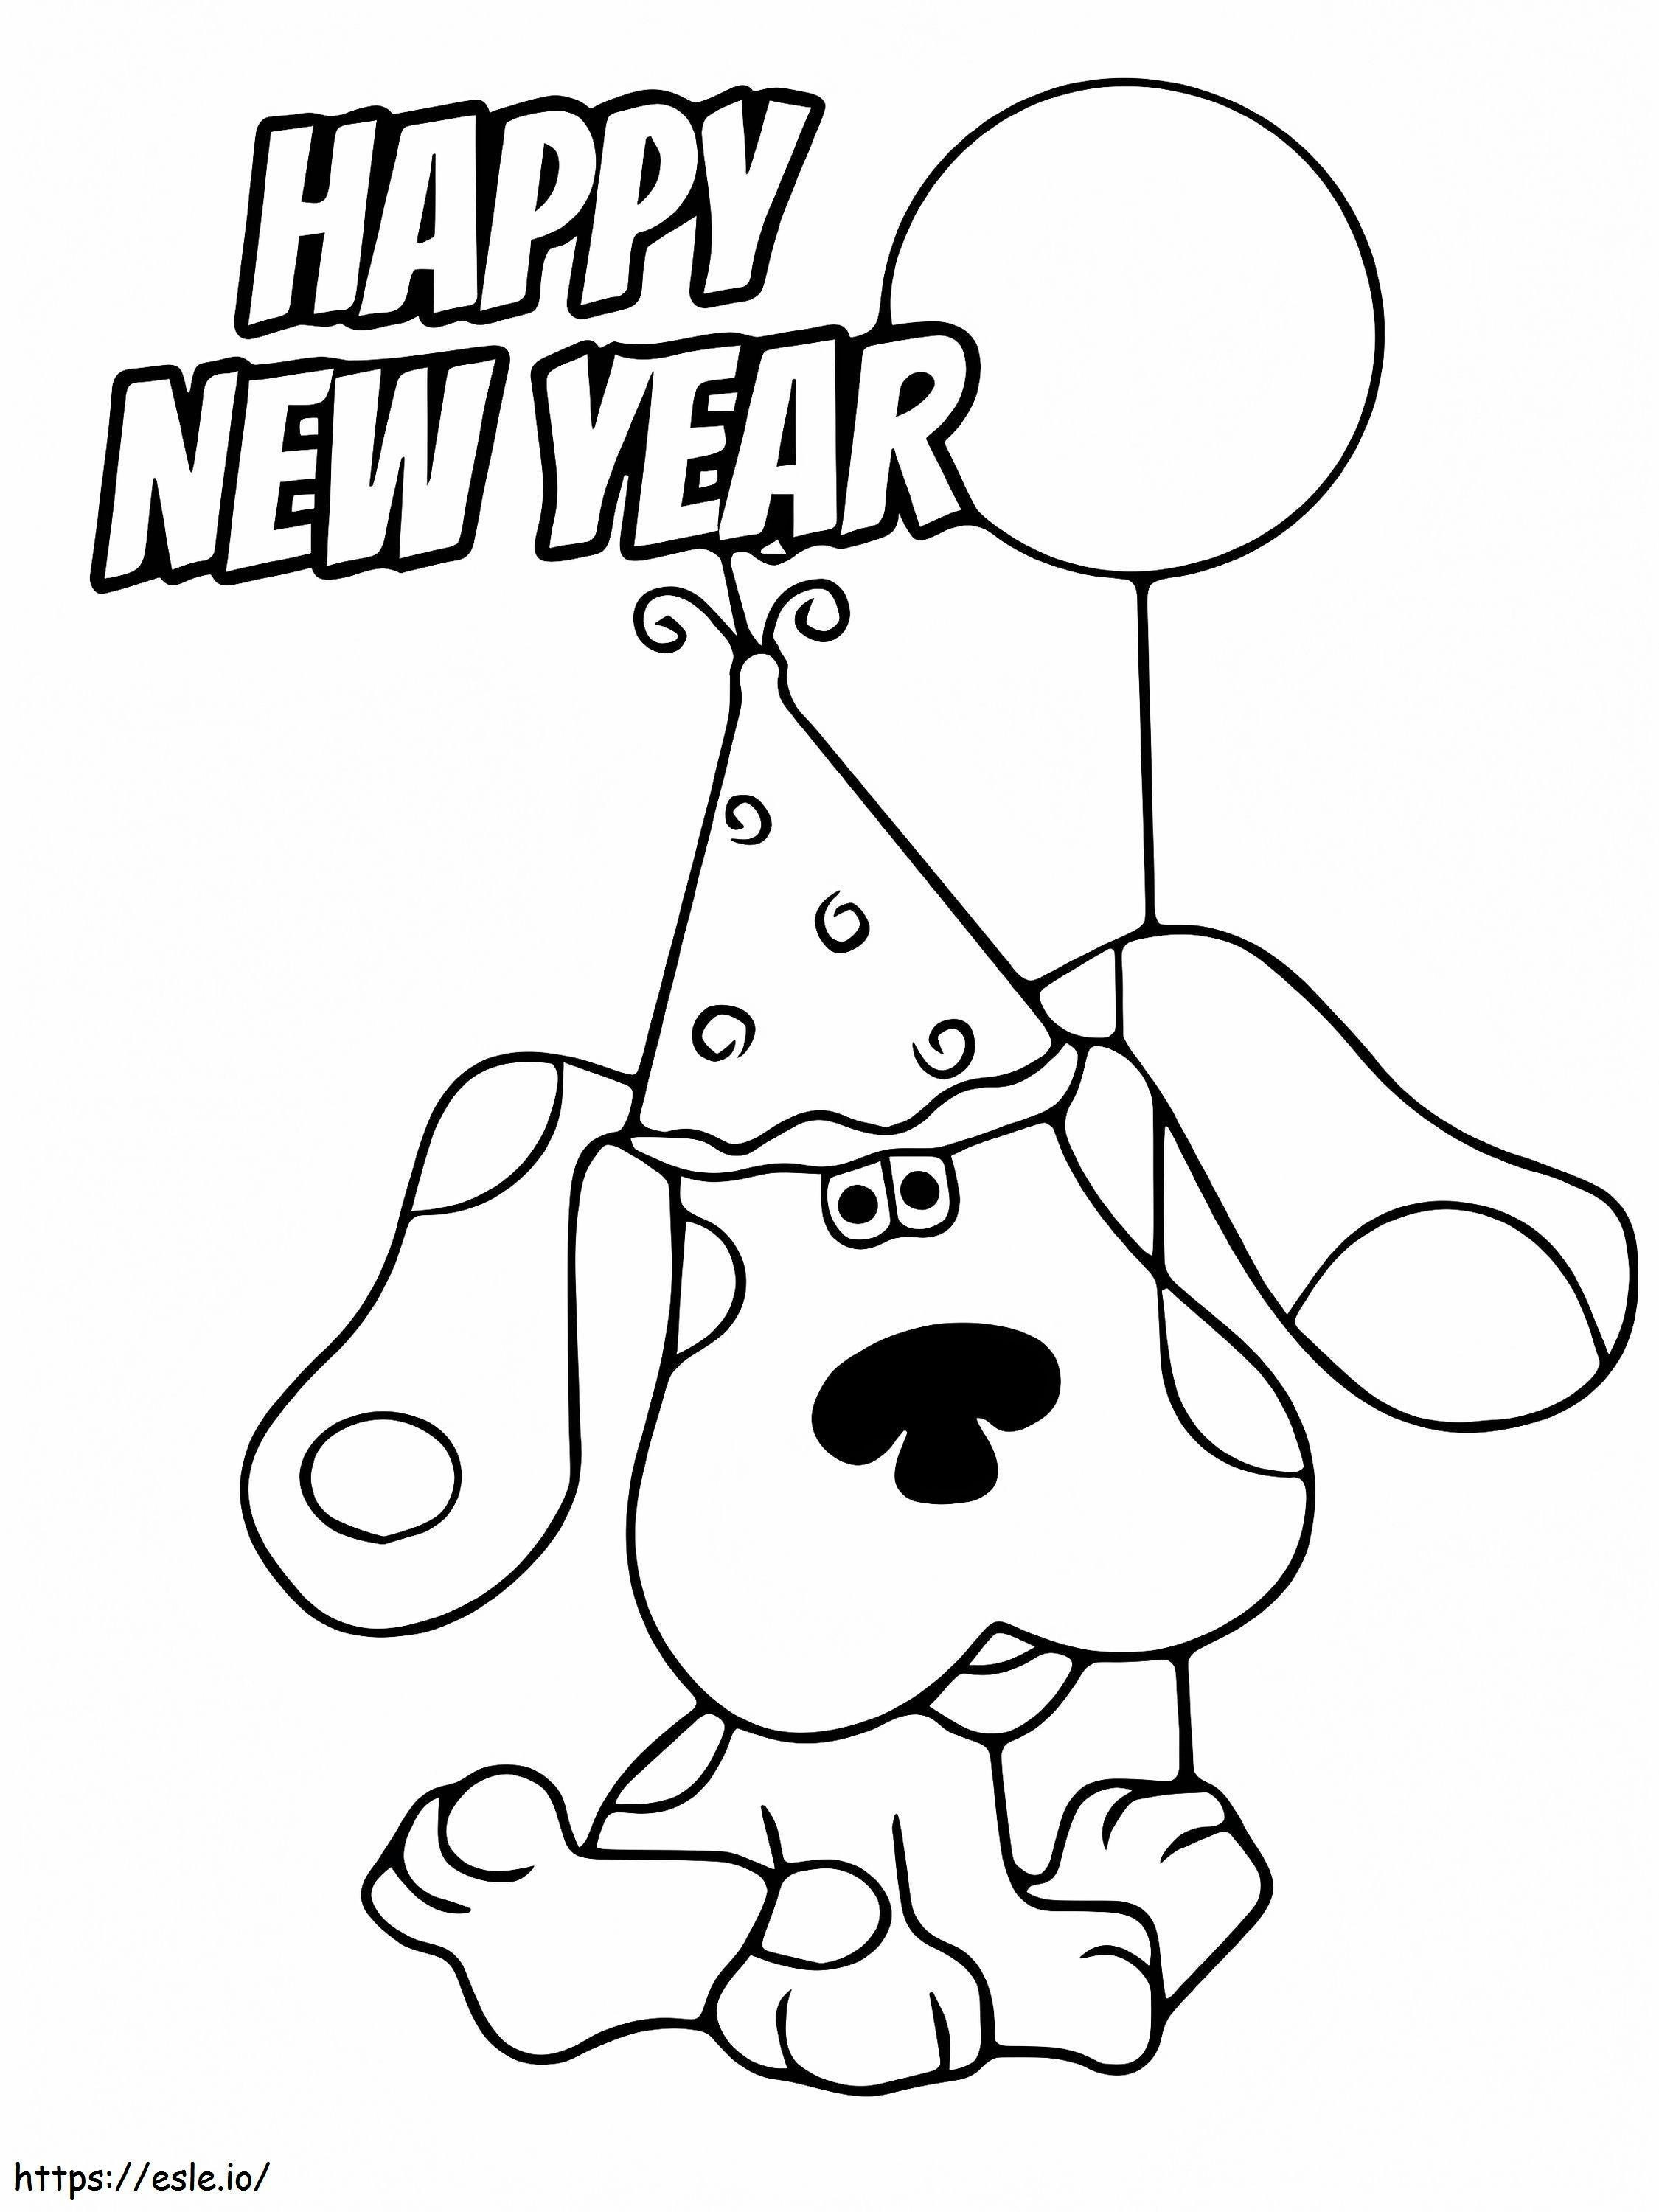 Felice anno nuovo con la pagina da colorare di disegno del cane da colorare